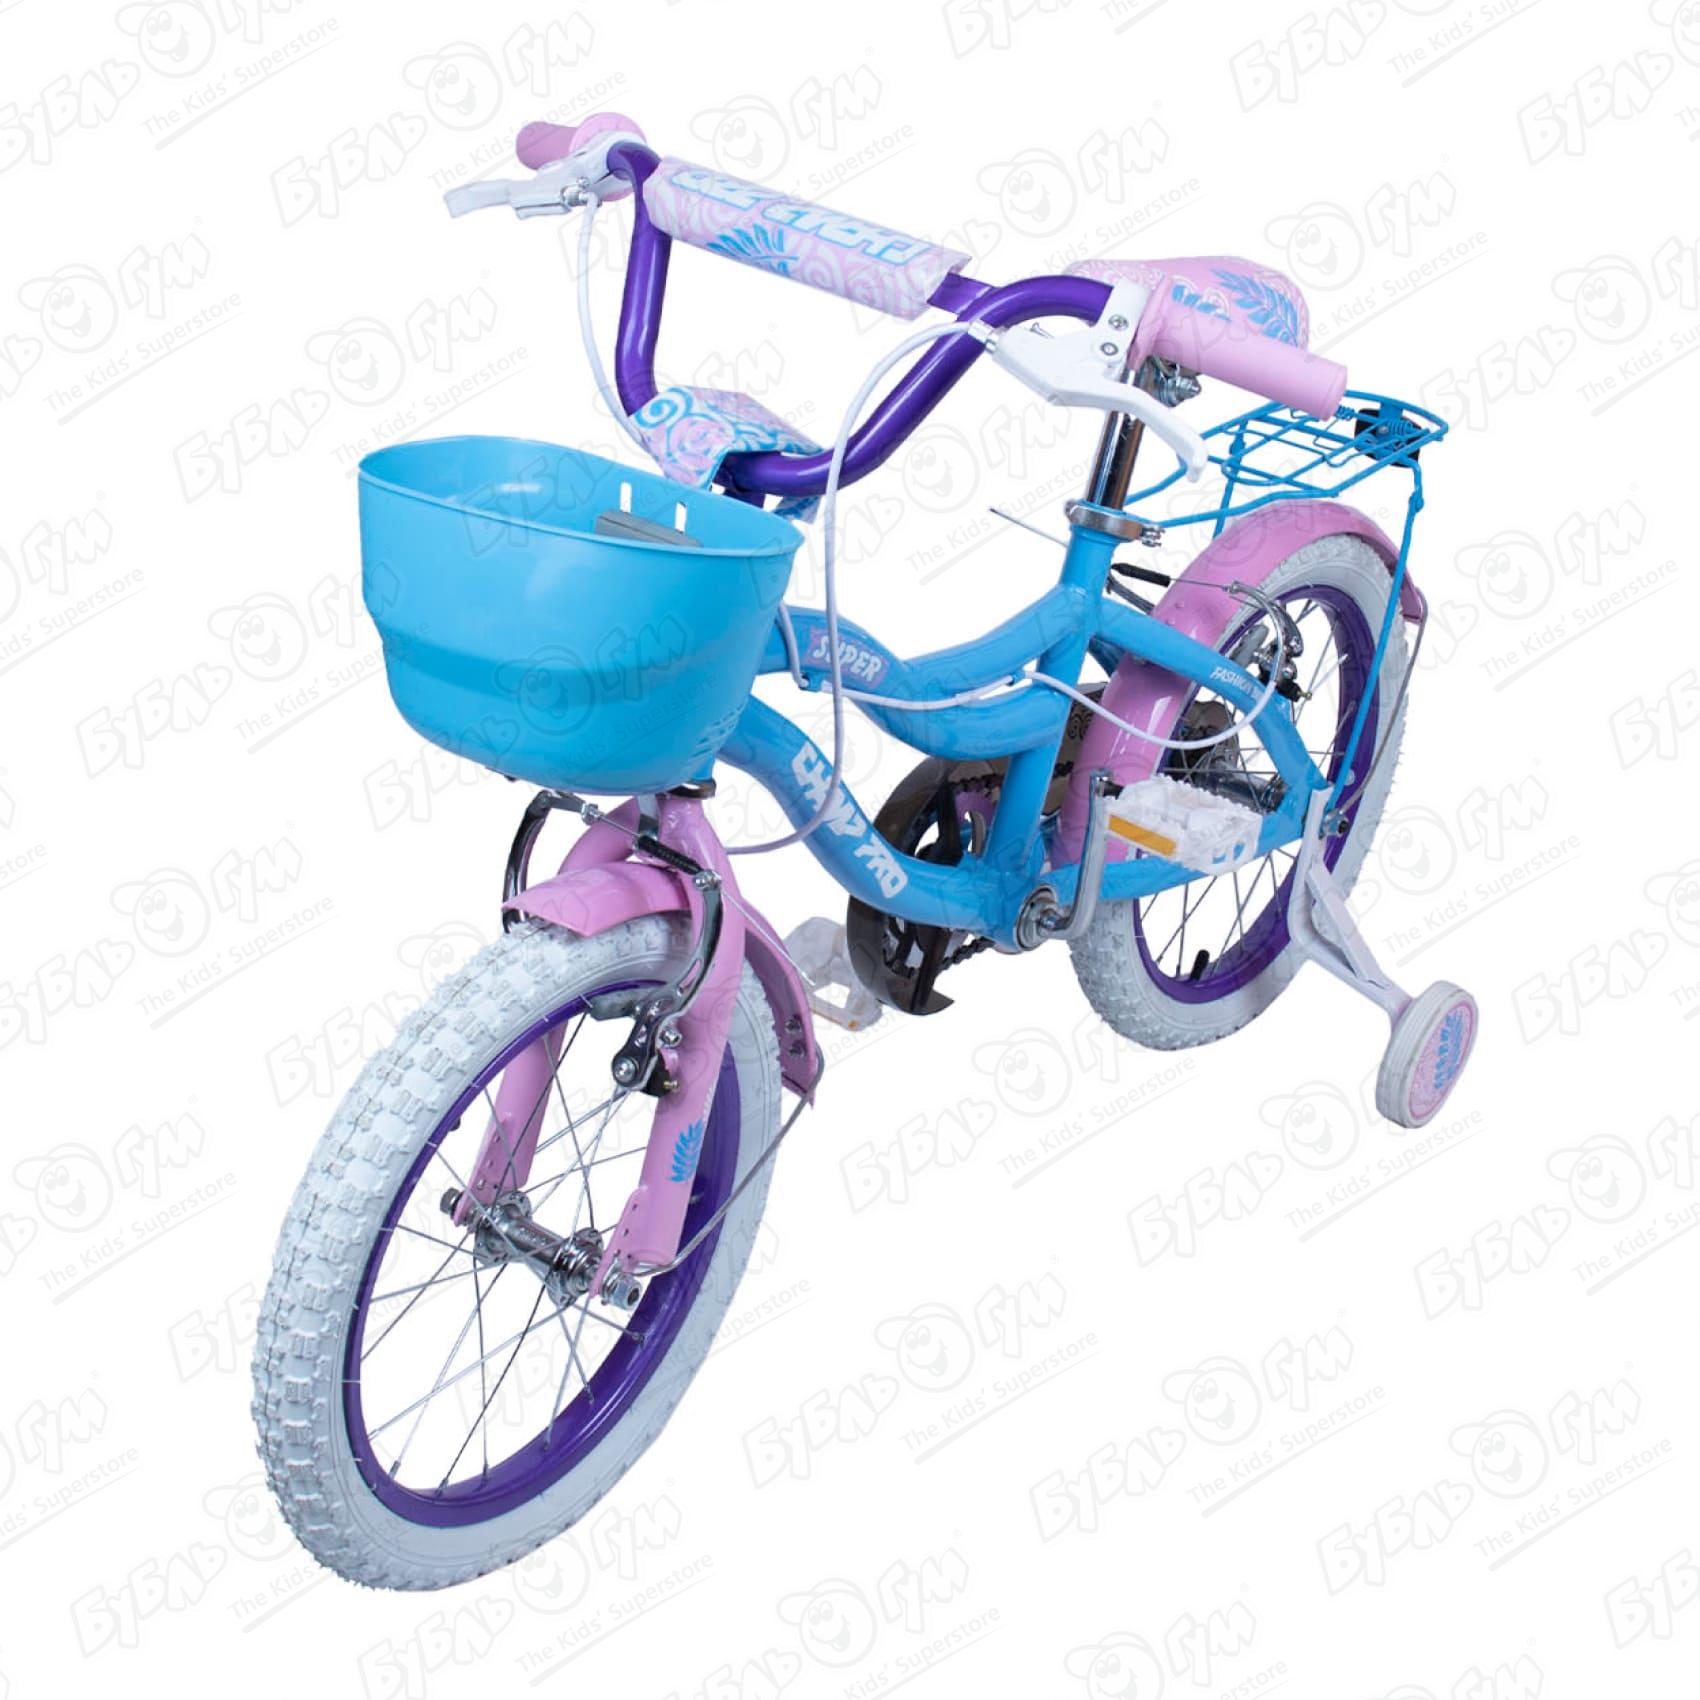 Велосипед Champ Pro детский G16 розово-фиолетовый, цвет голубой - фото 1